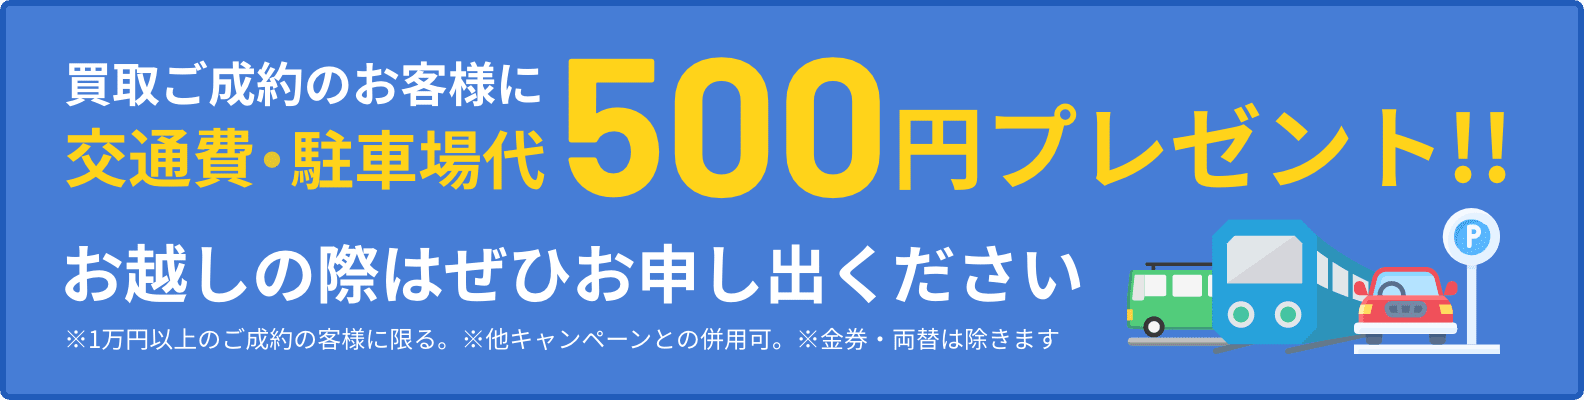 500円プレゼント